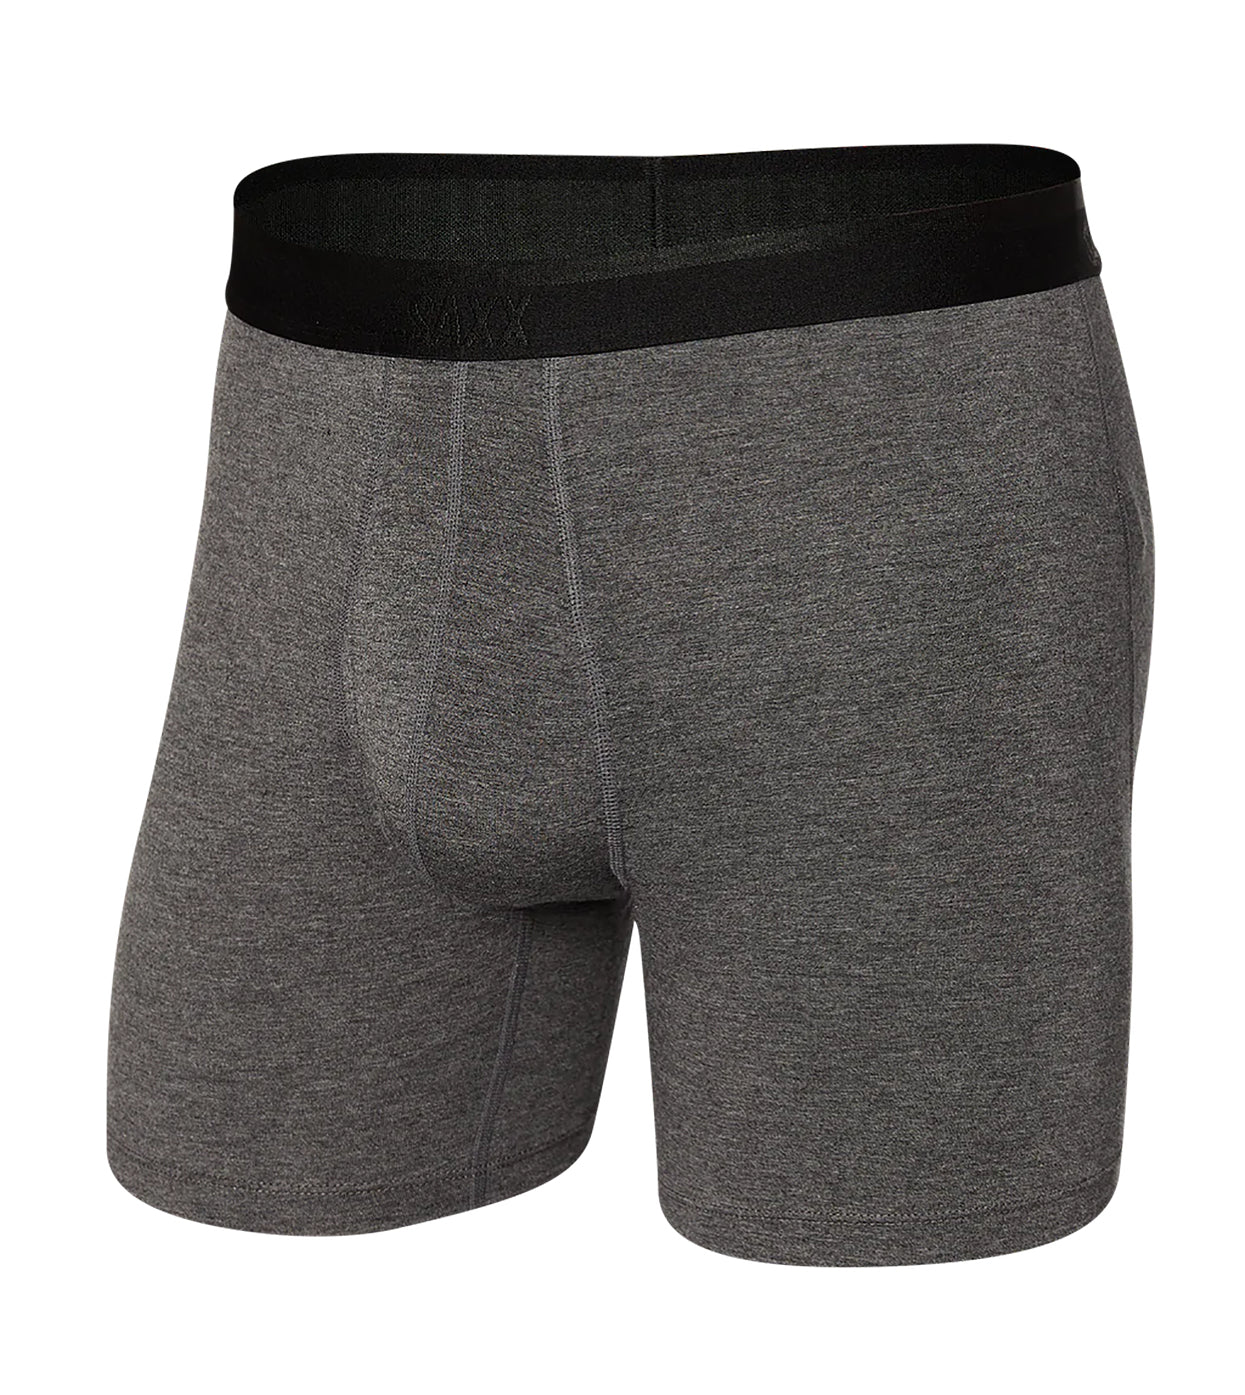 Underwear boxers SAXX, Men's underwear